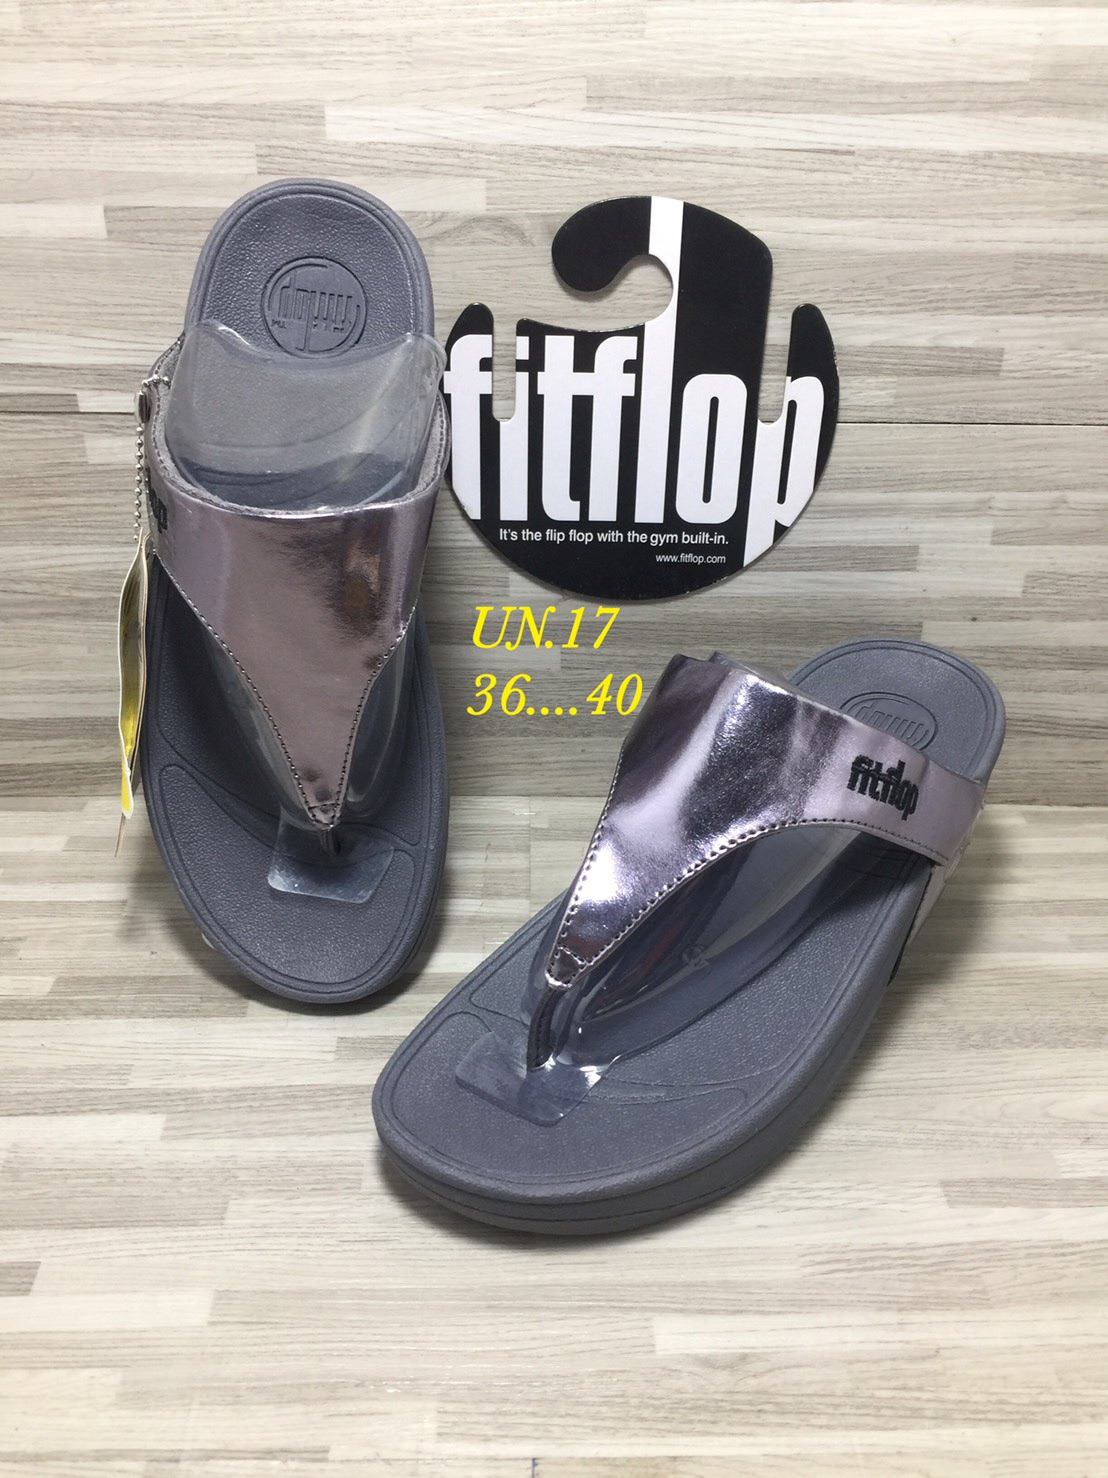 รองเท้า Fitflop รองเท้าสุขภาพผู้หญิงมีไซด์36ถึง 40 สินค้าพร้อมจัดส่งค่ะ